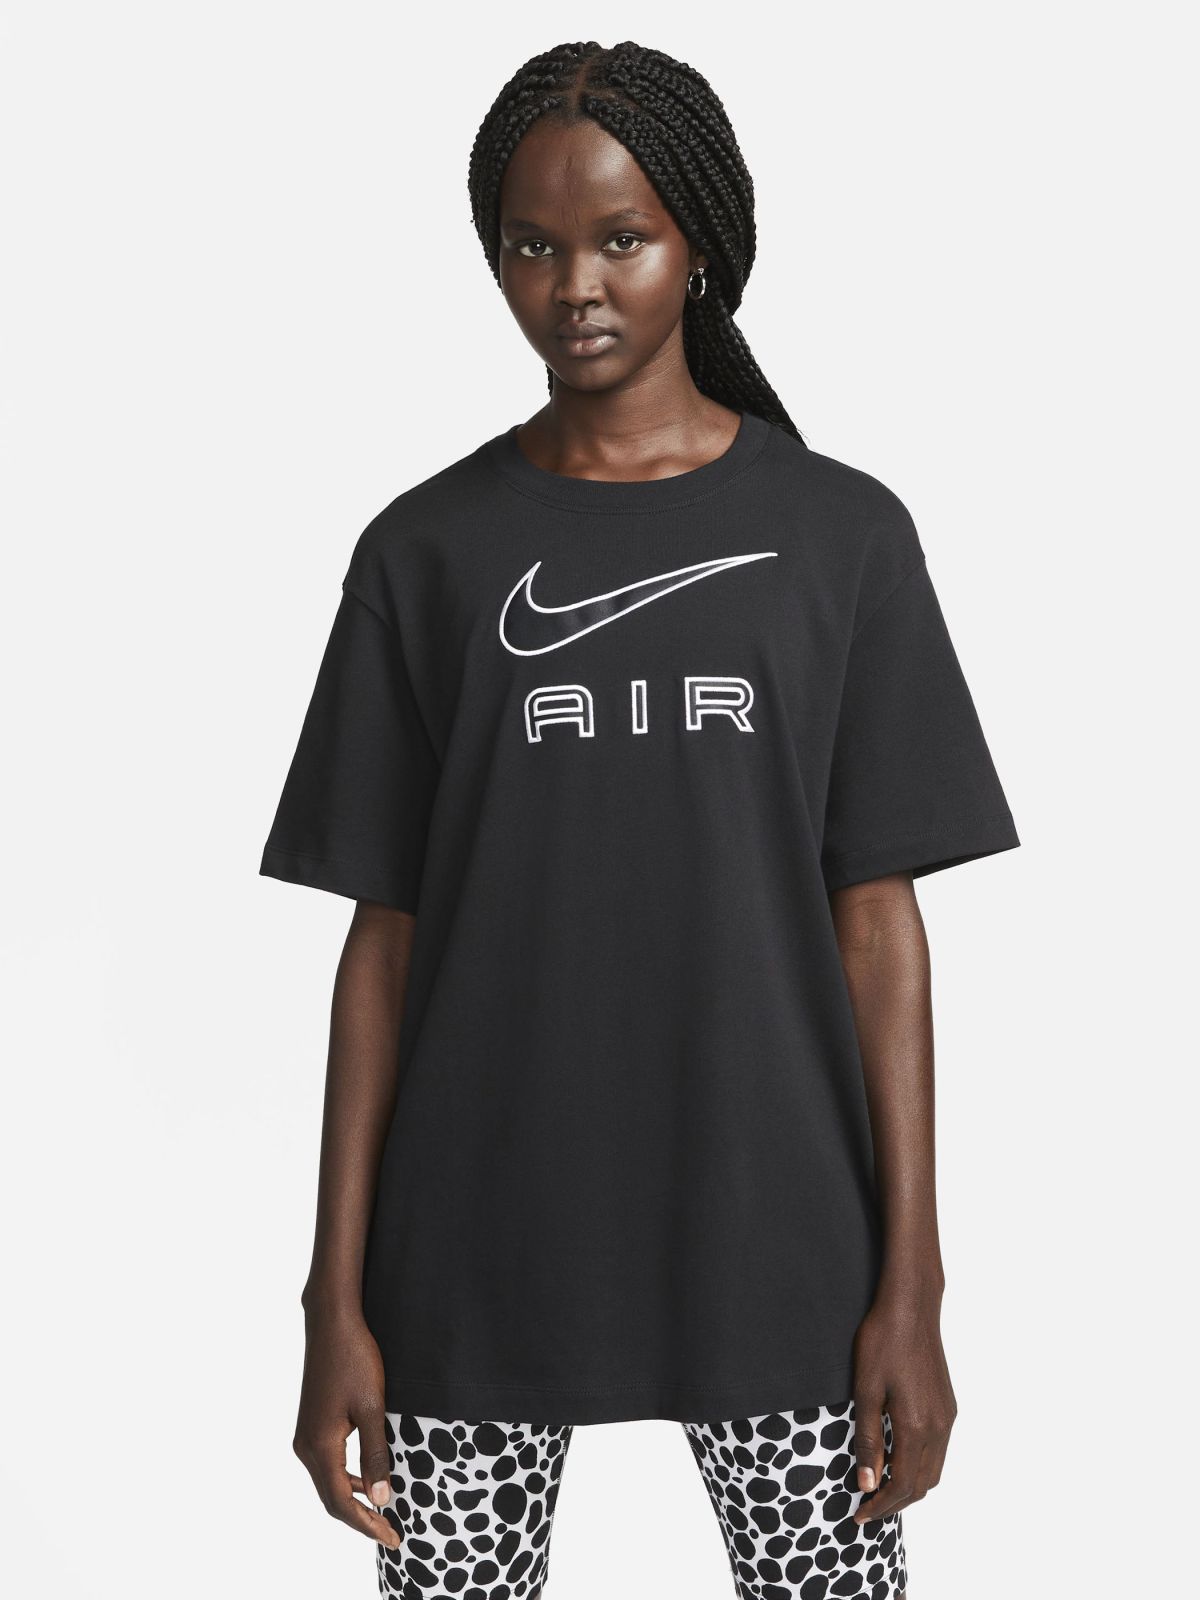  טי שירט עם לוגו Nike Air של NIKE